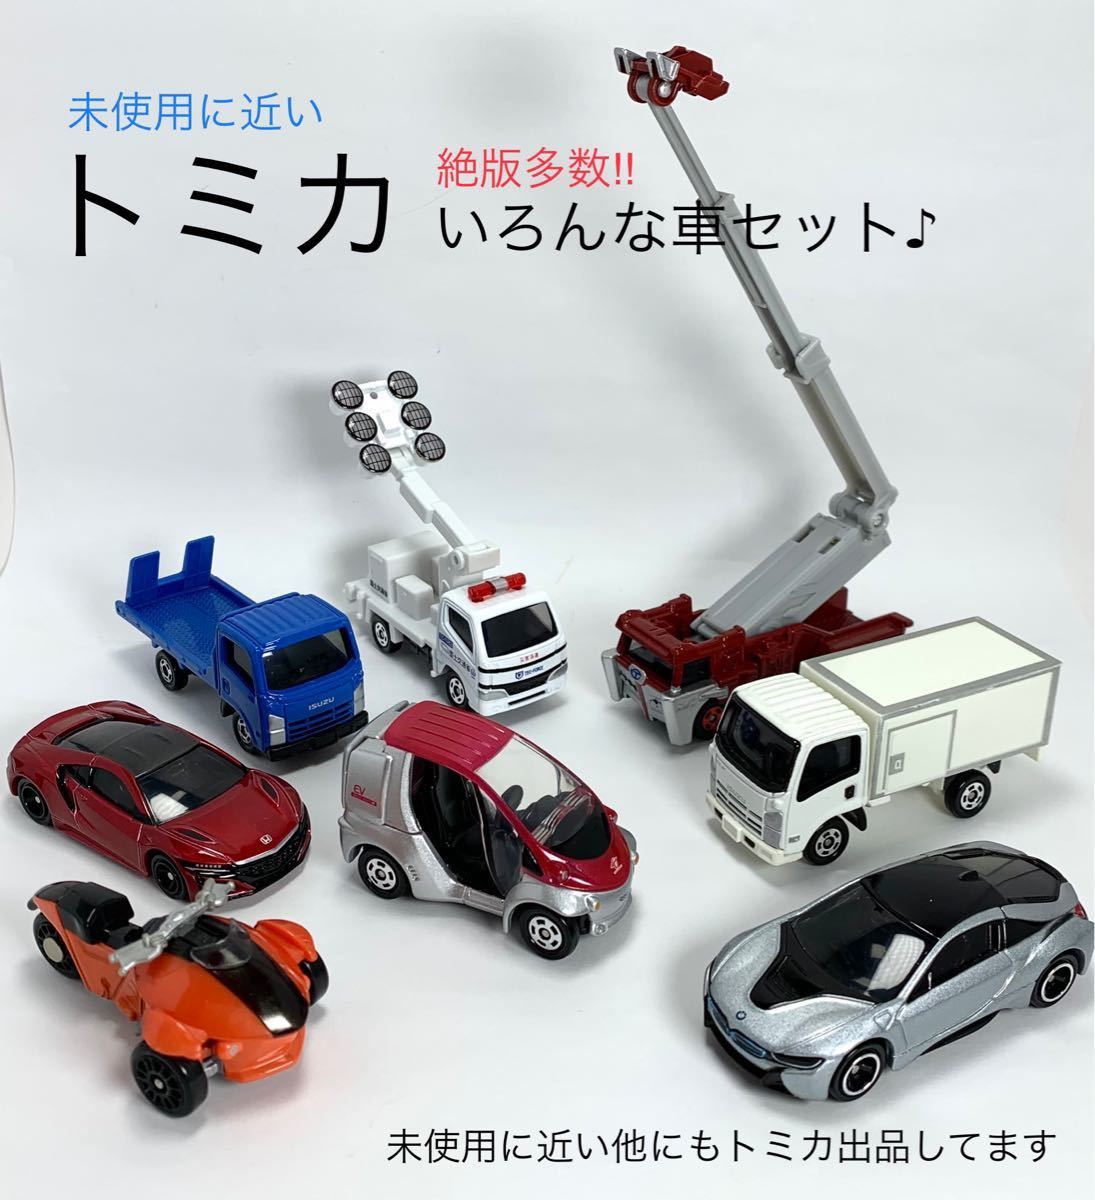 絶版6台 [トミカ 01] いろんな車 8台セット、車、ミニカー、おもちゃ